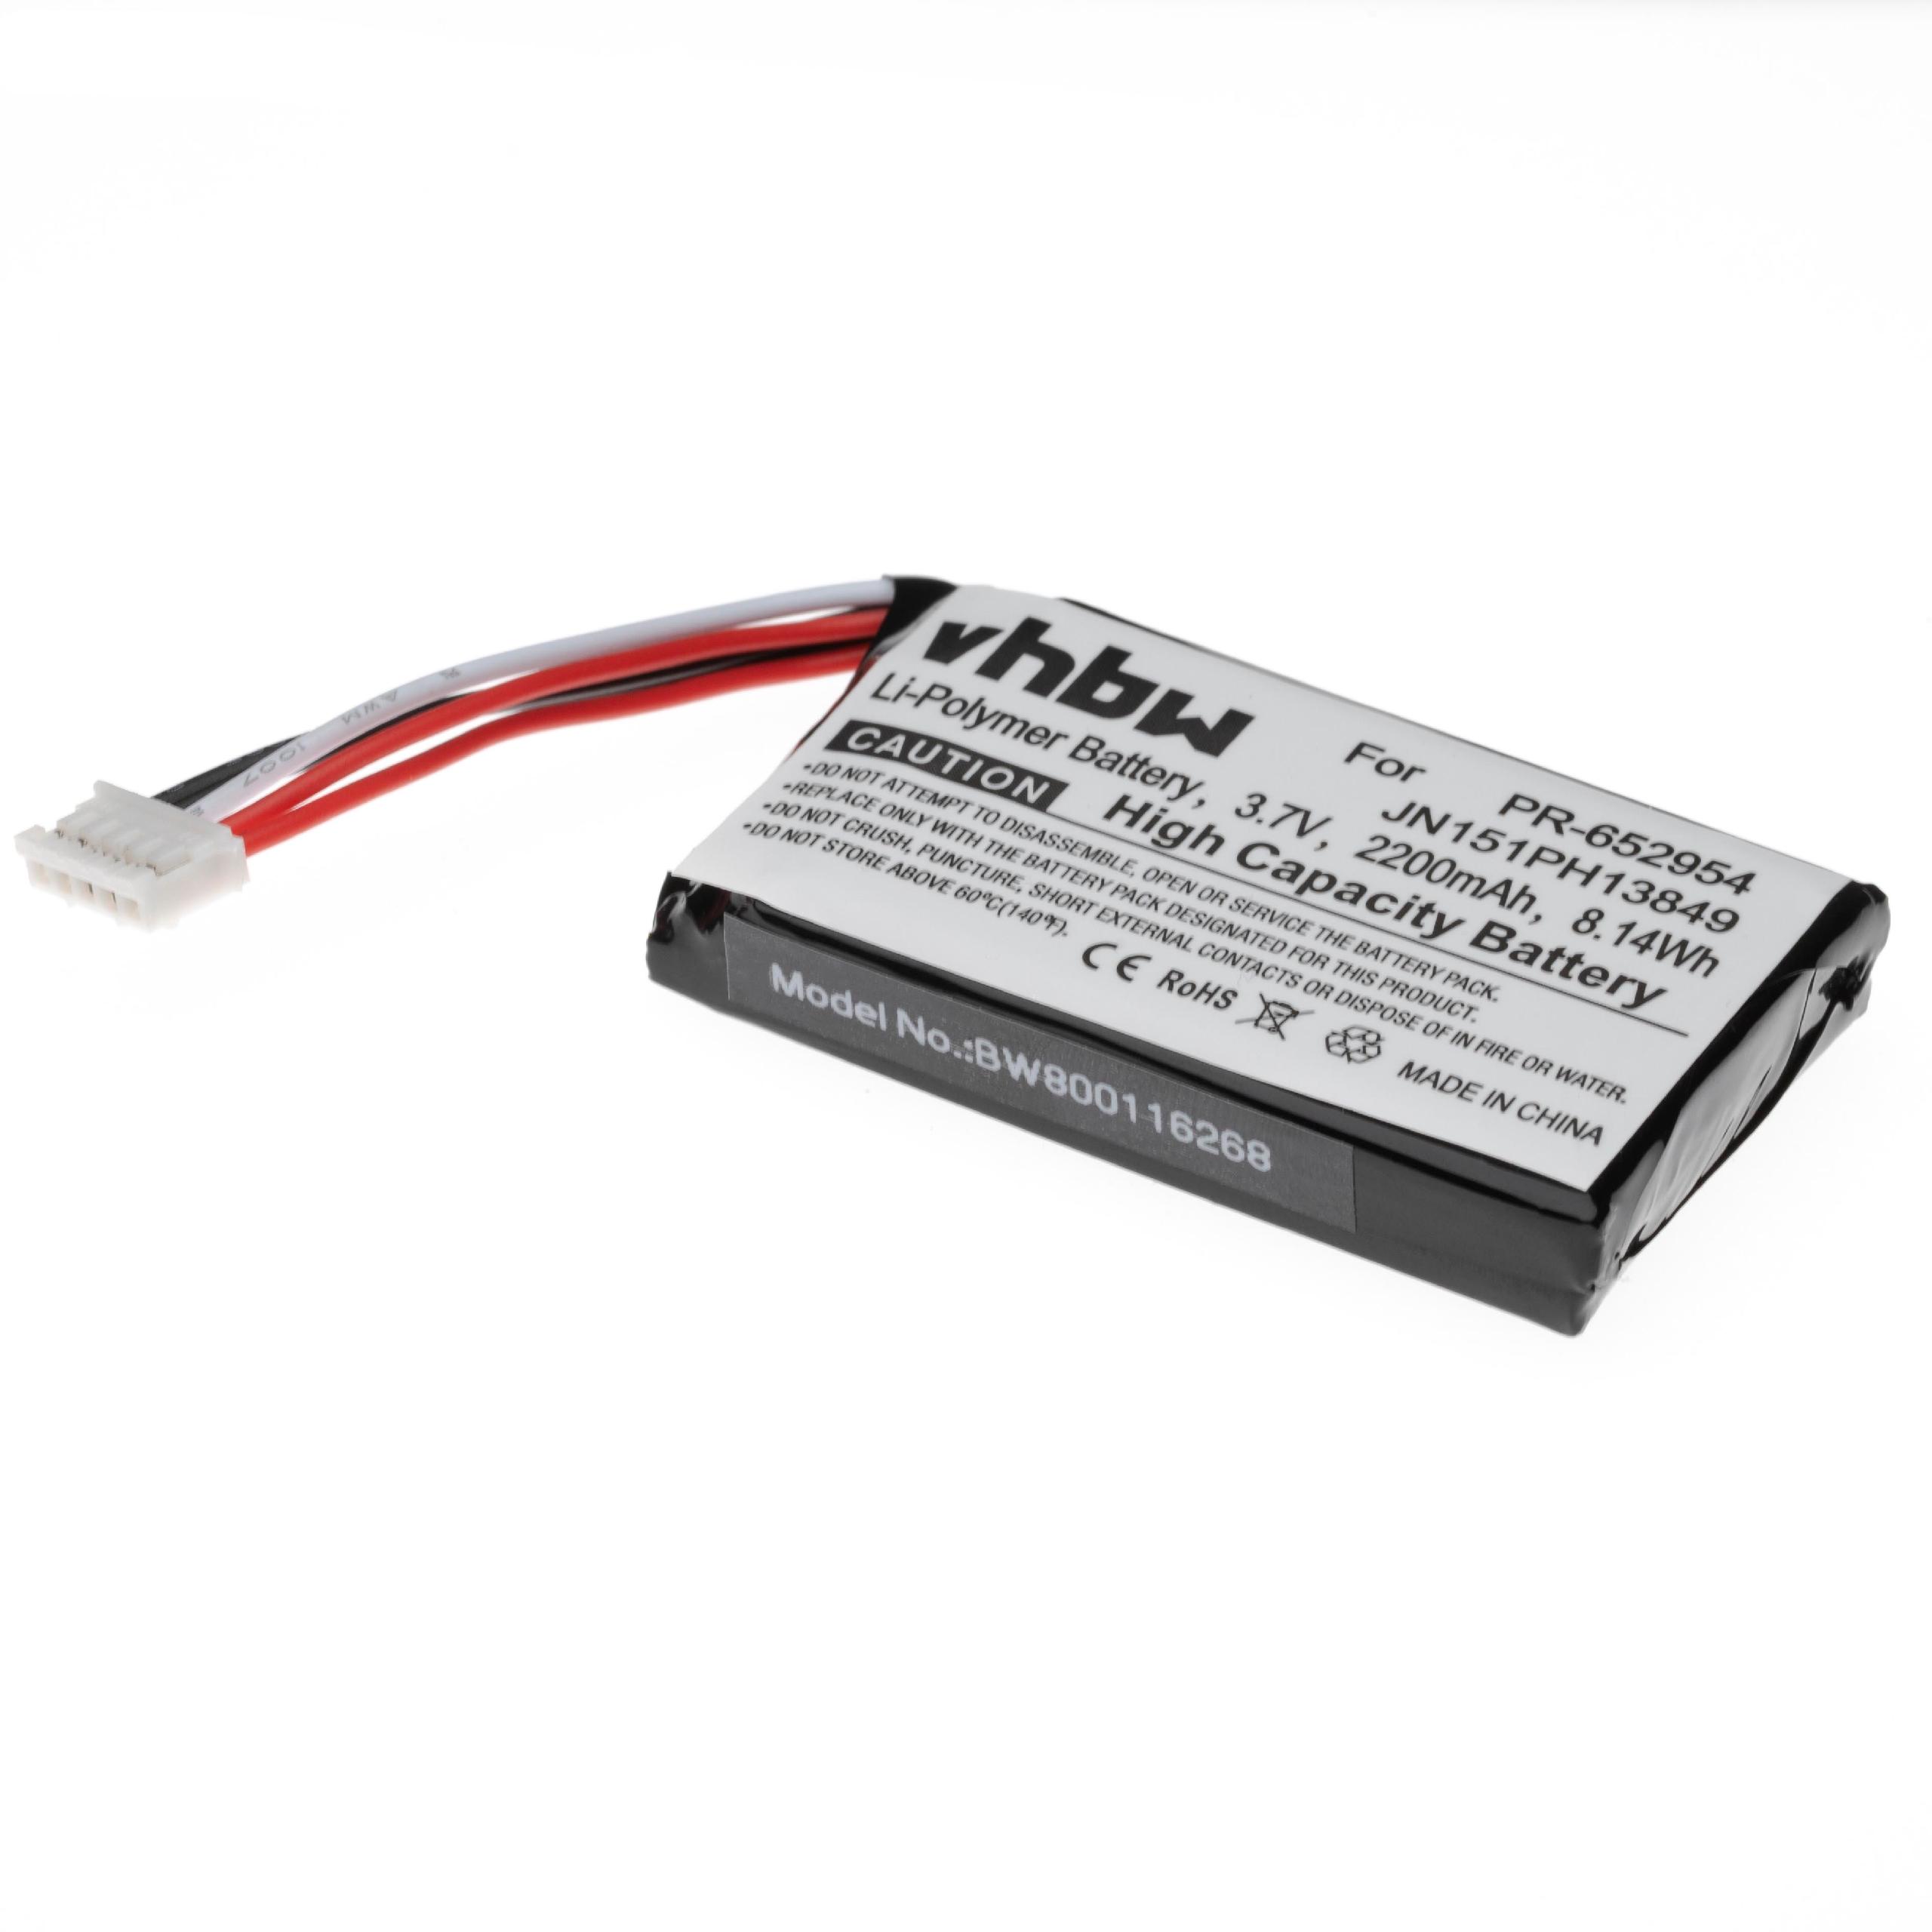 Batería reemplaza JBL JN151PH13849, PR-652954 para altavoces JBL - 2200 mAh 3,7 V Li-poli